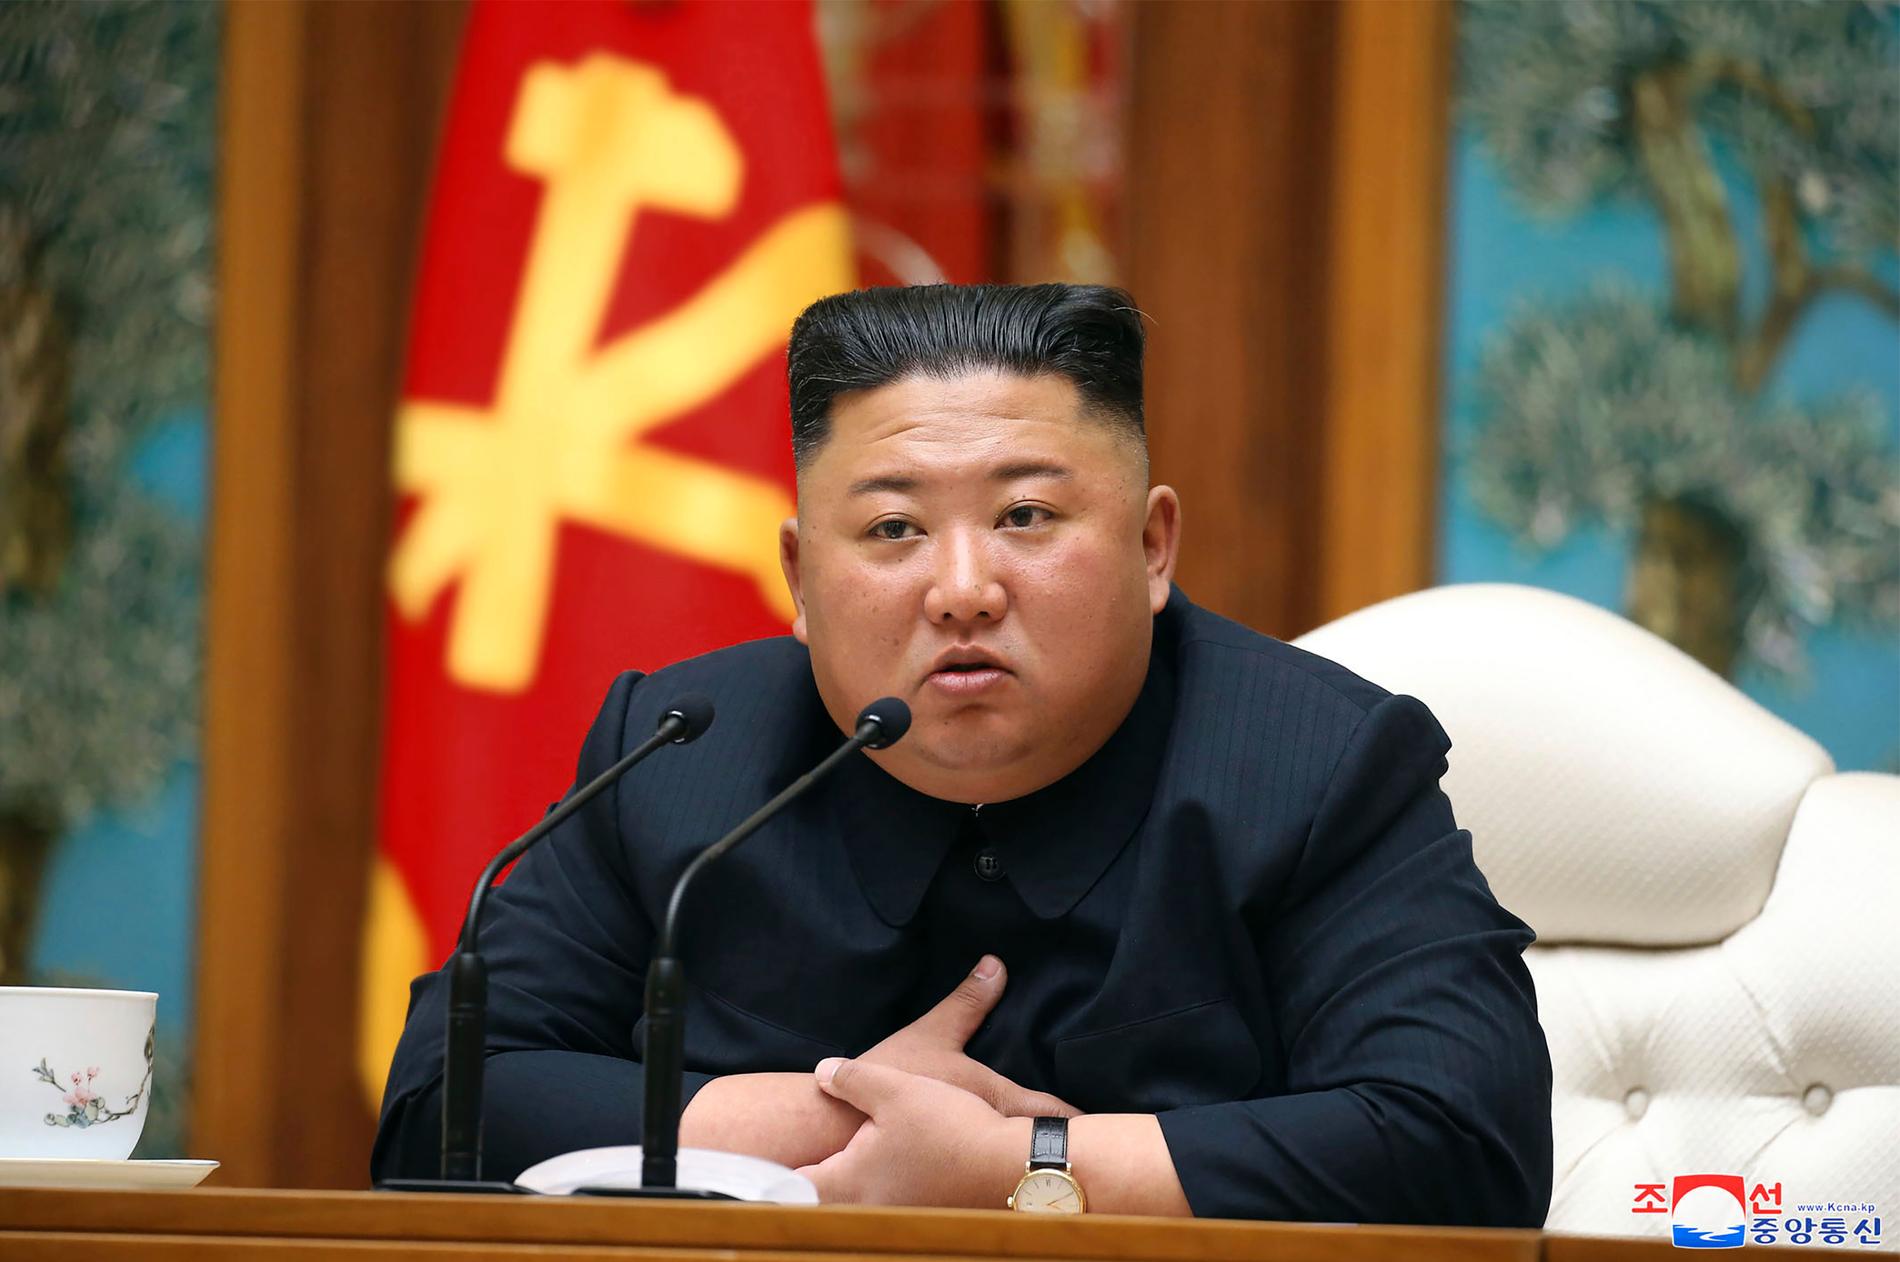 En av de senaste färska bilderna på Kim. Den uppges vara tagen den 11 april, och publicerades av nordkoreanska medier dagen efter.